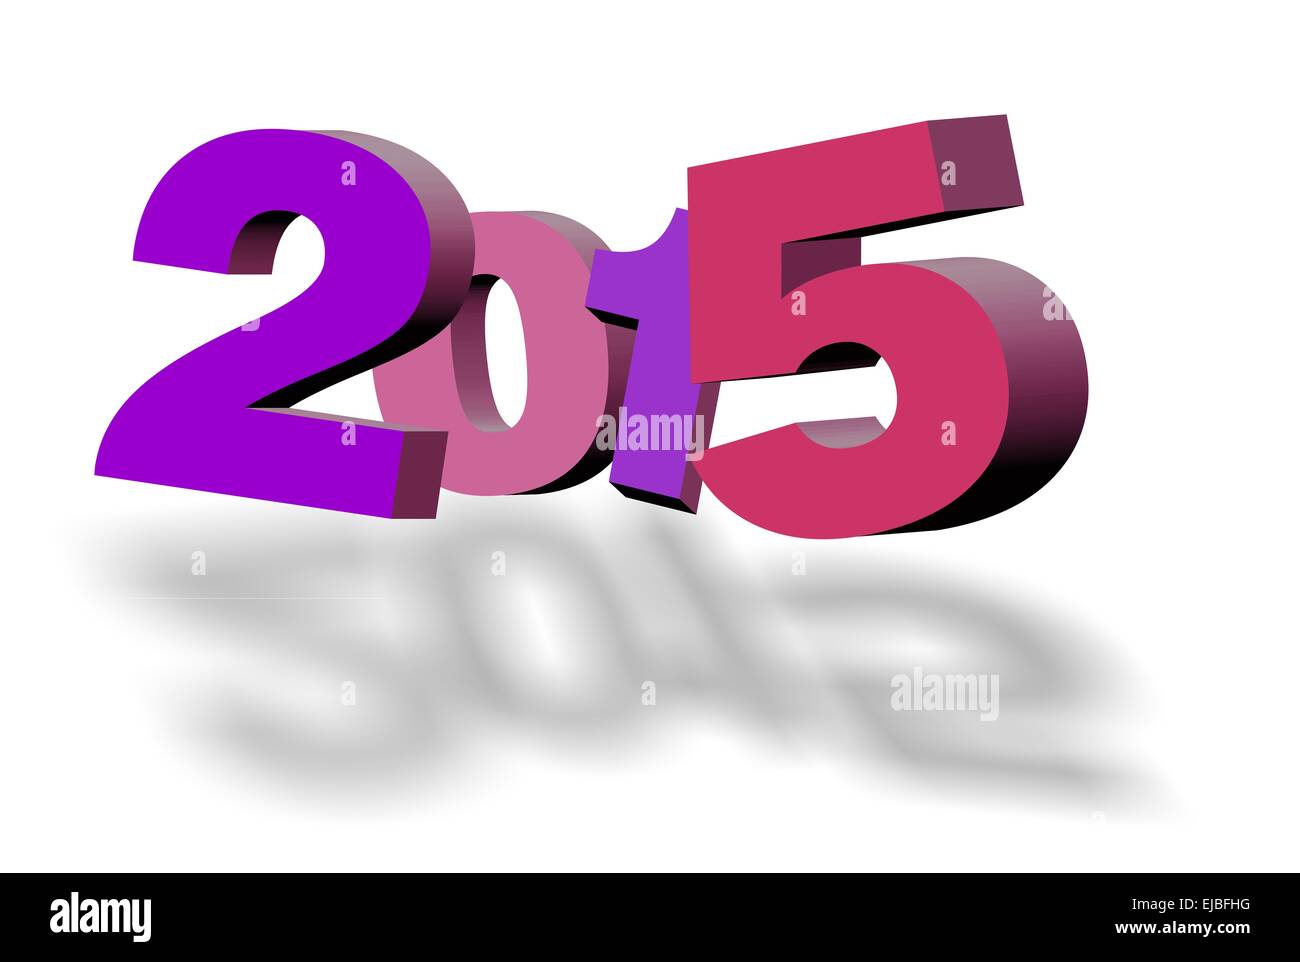 Illustrazione per la felice anno nuovo 2015 Foto Stock